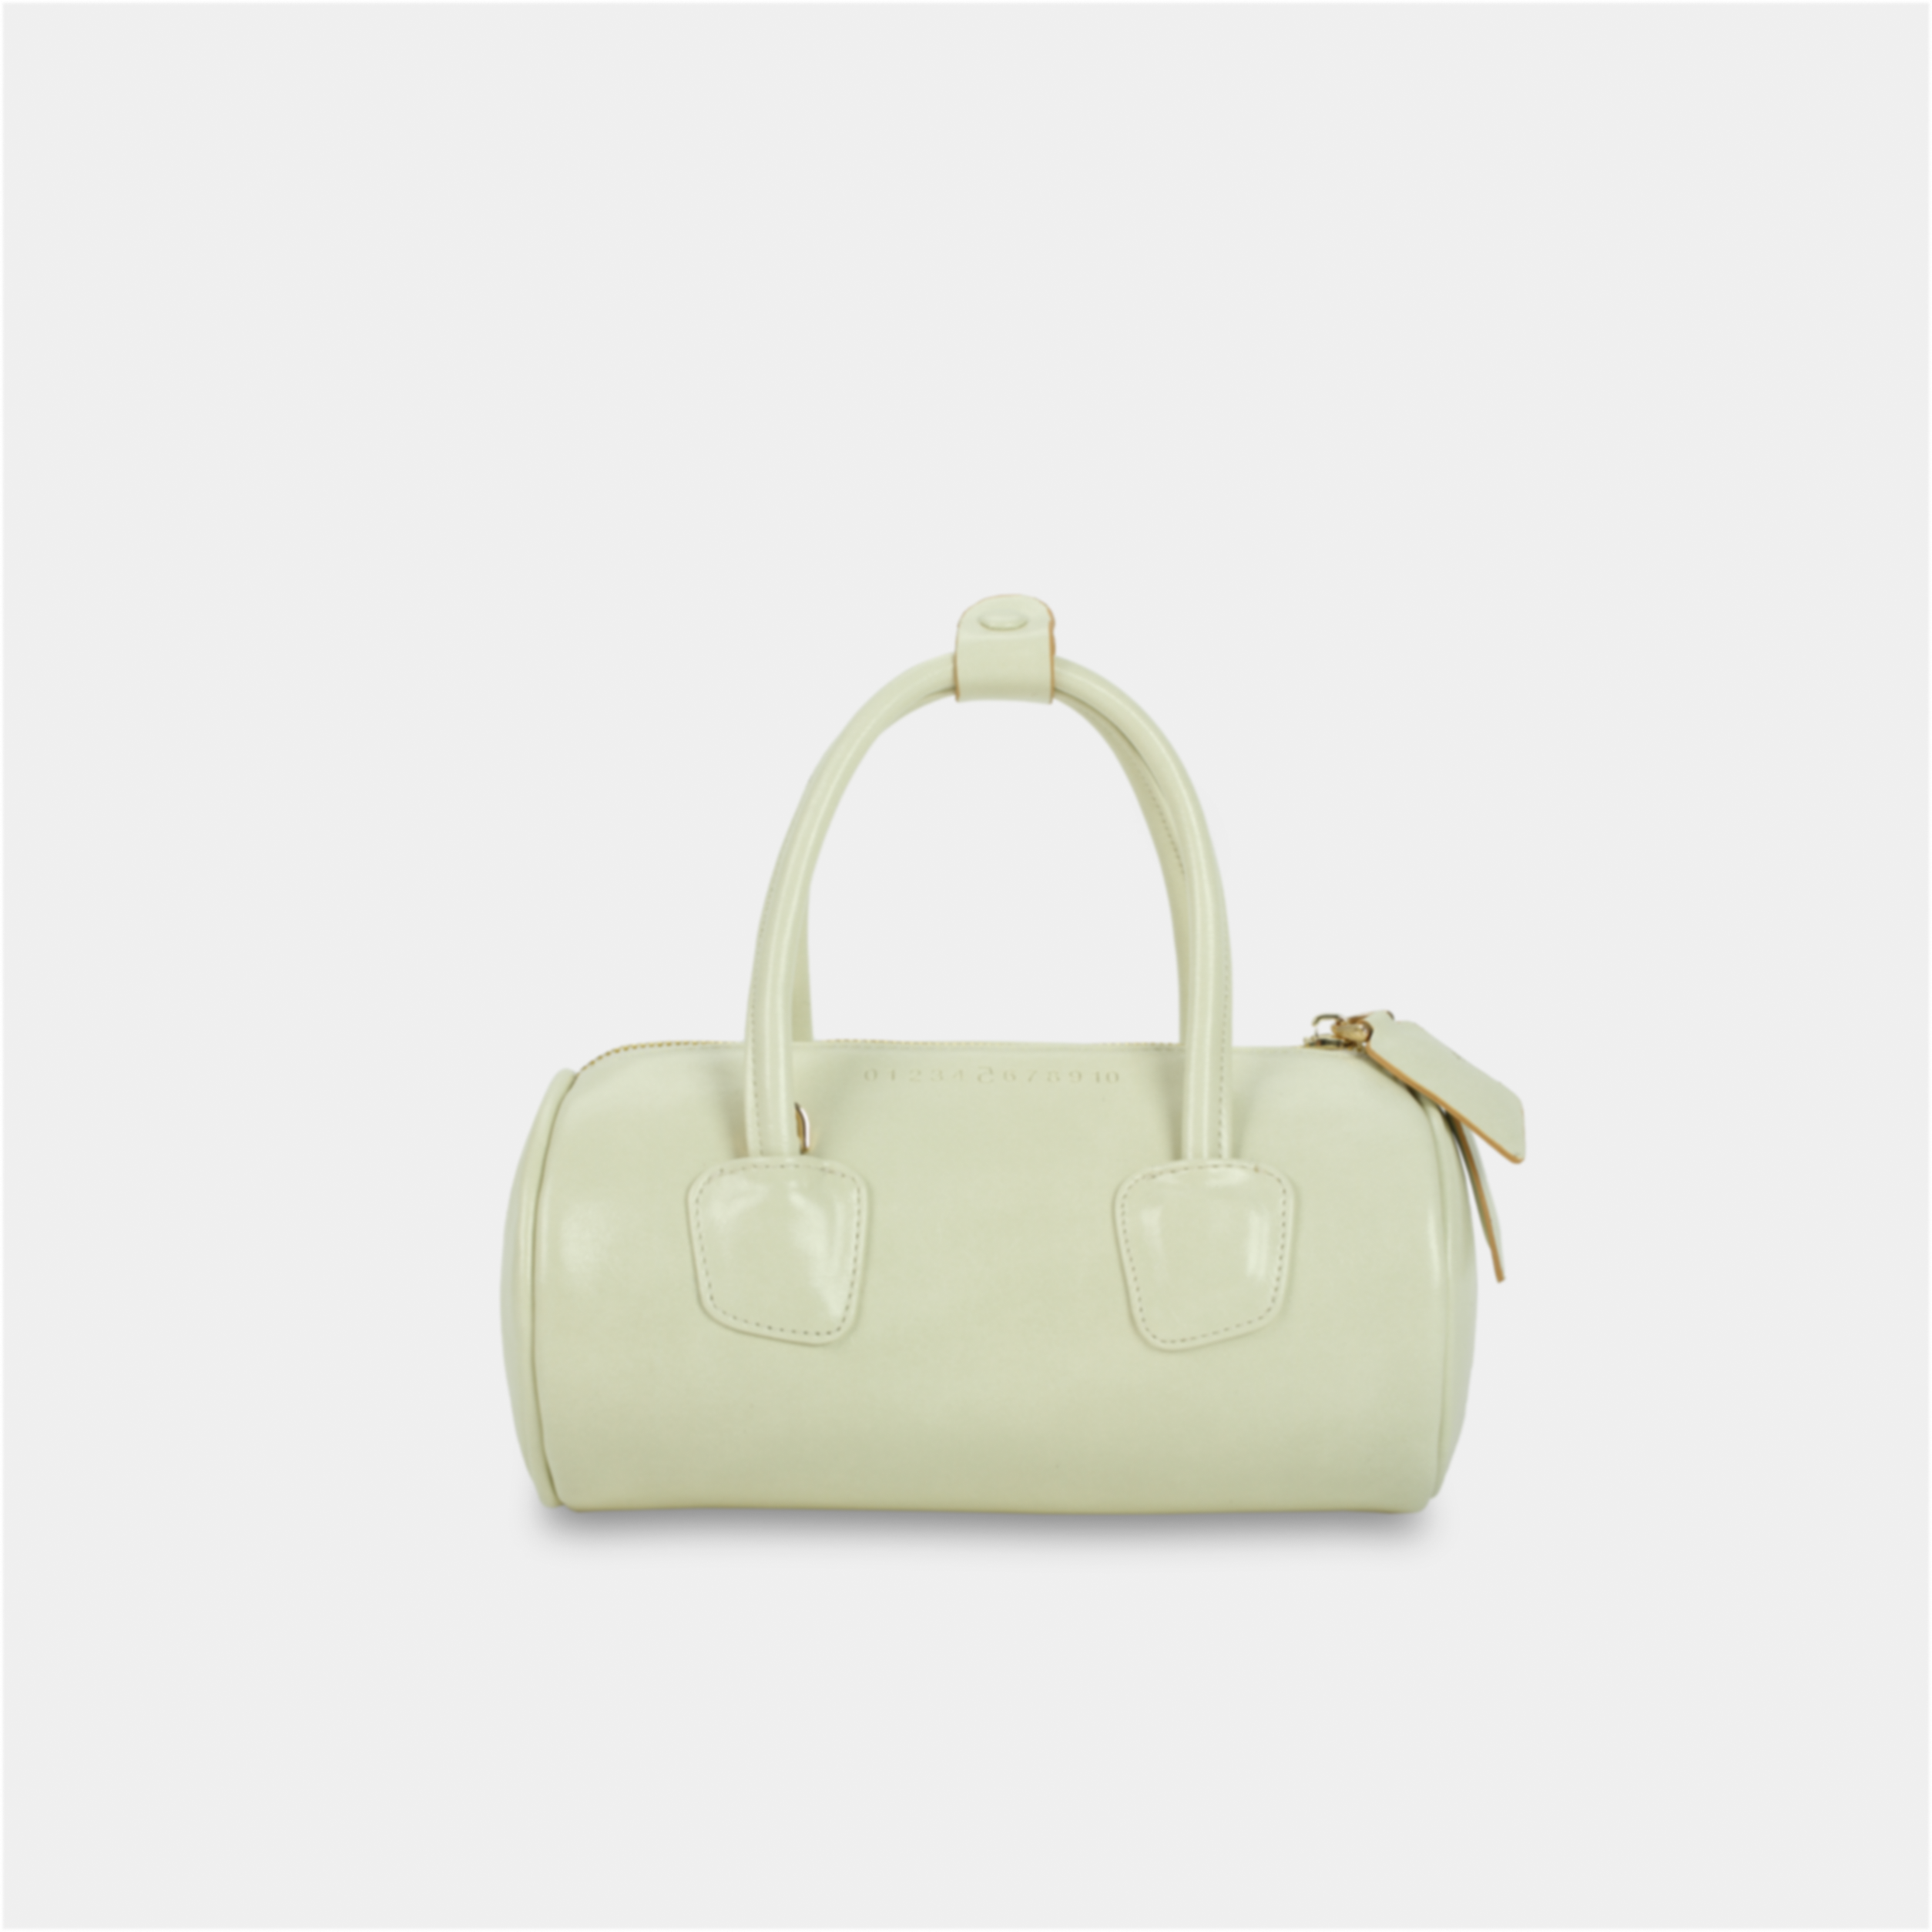 White ROLL handbag